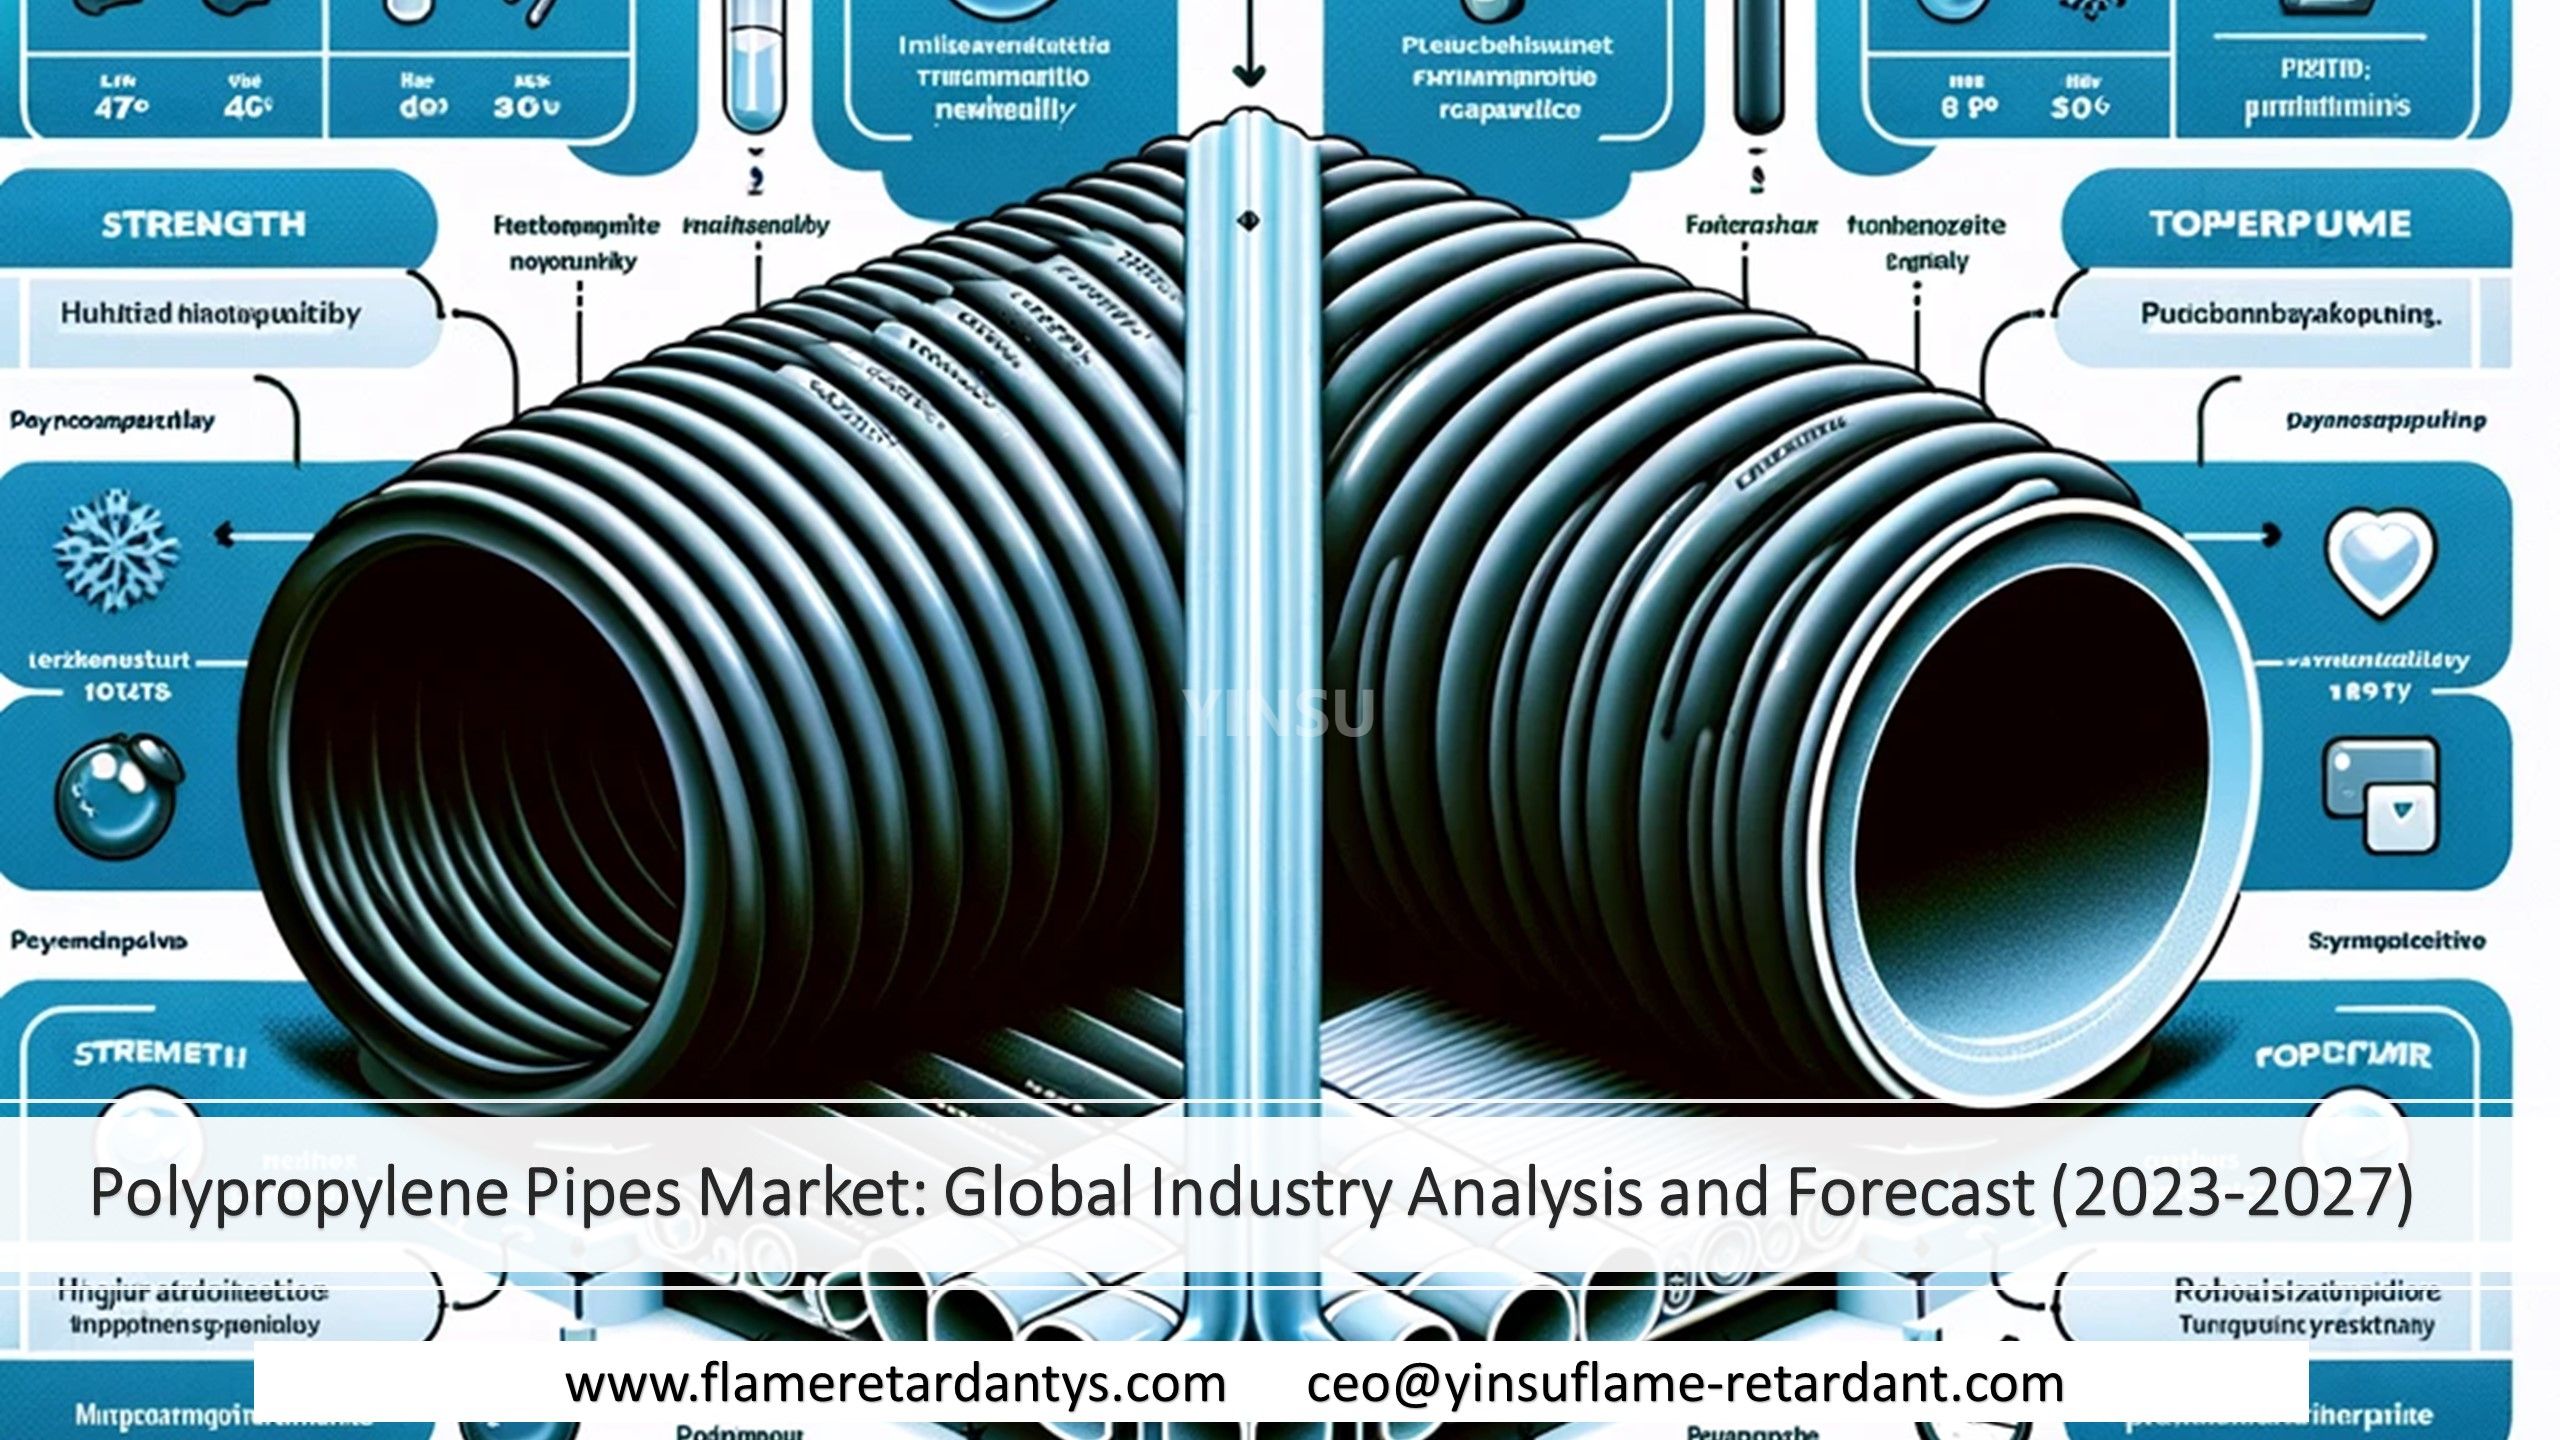 سوق أنابيب البولي بروبيلين: تحليل وتوقعات الصناعة العالمية (2023-2027)